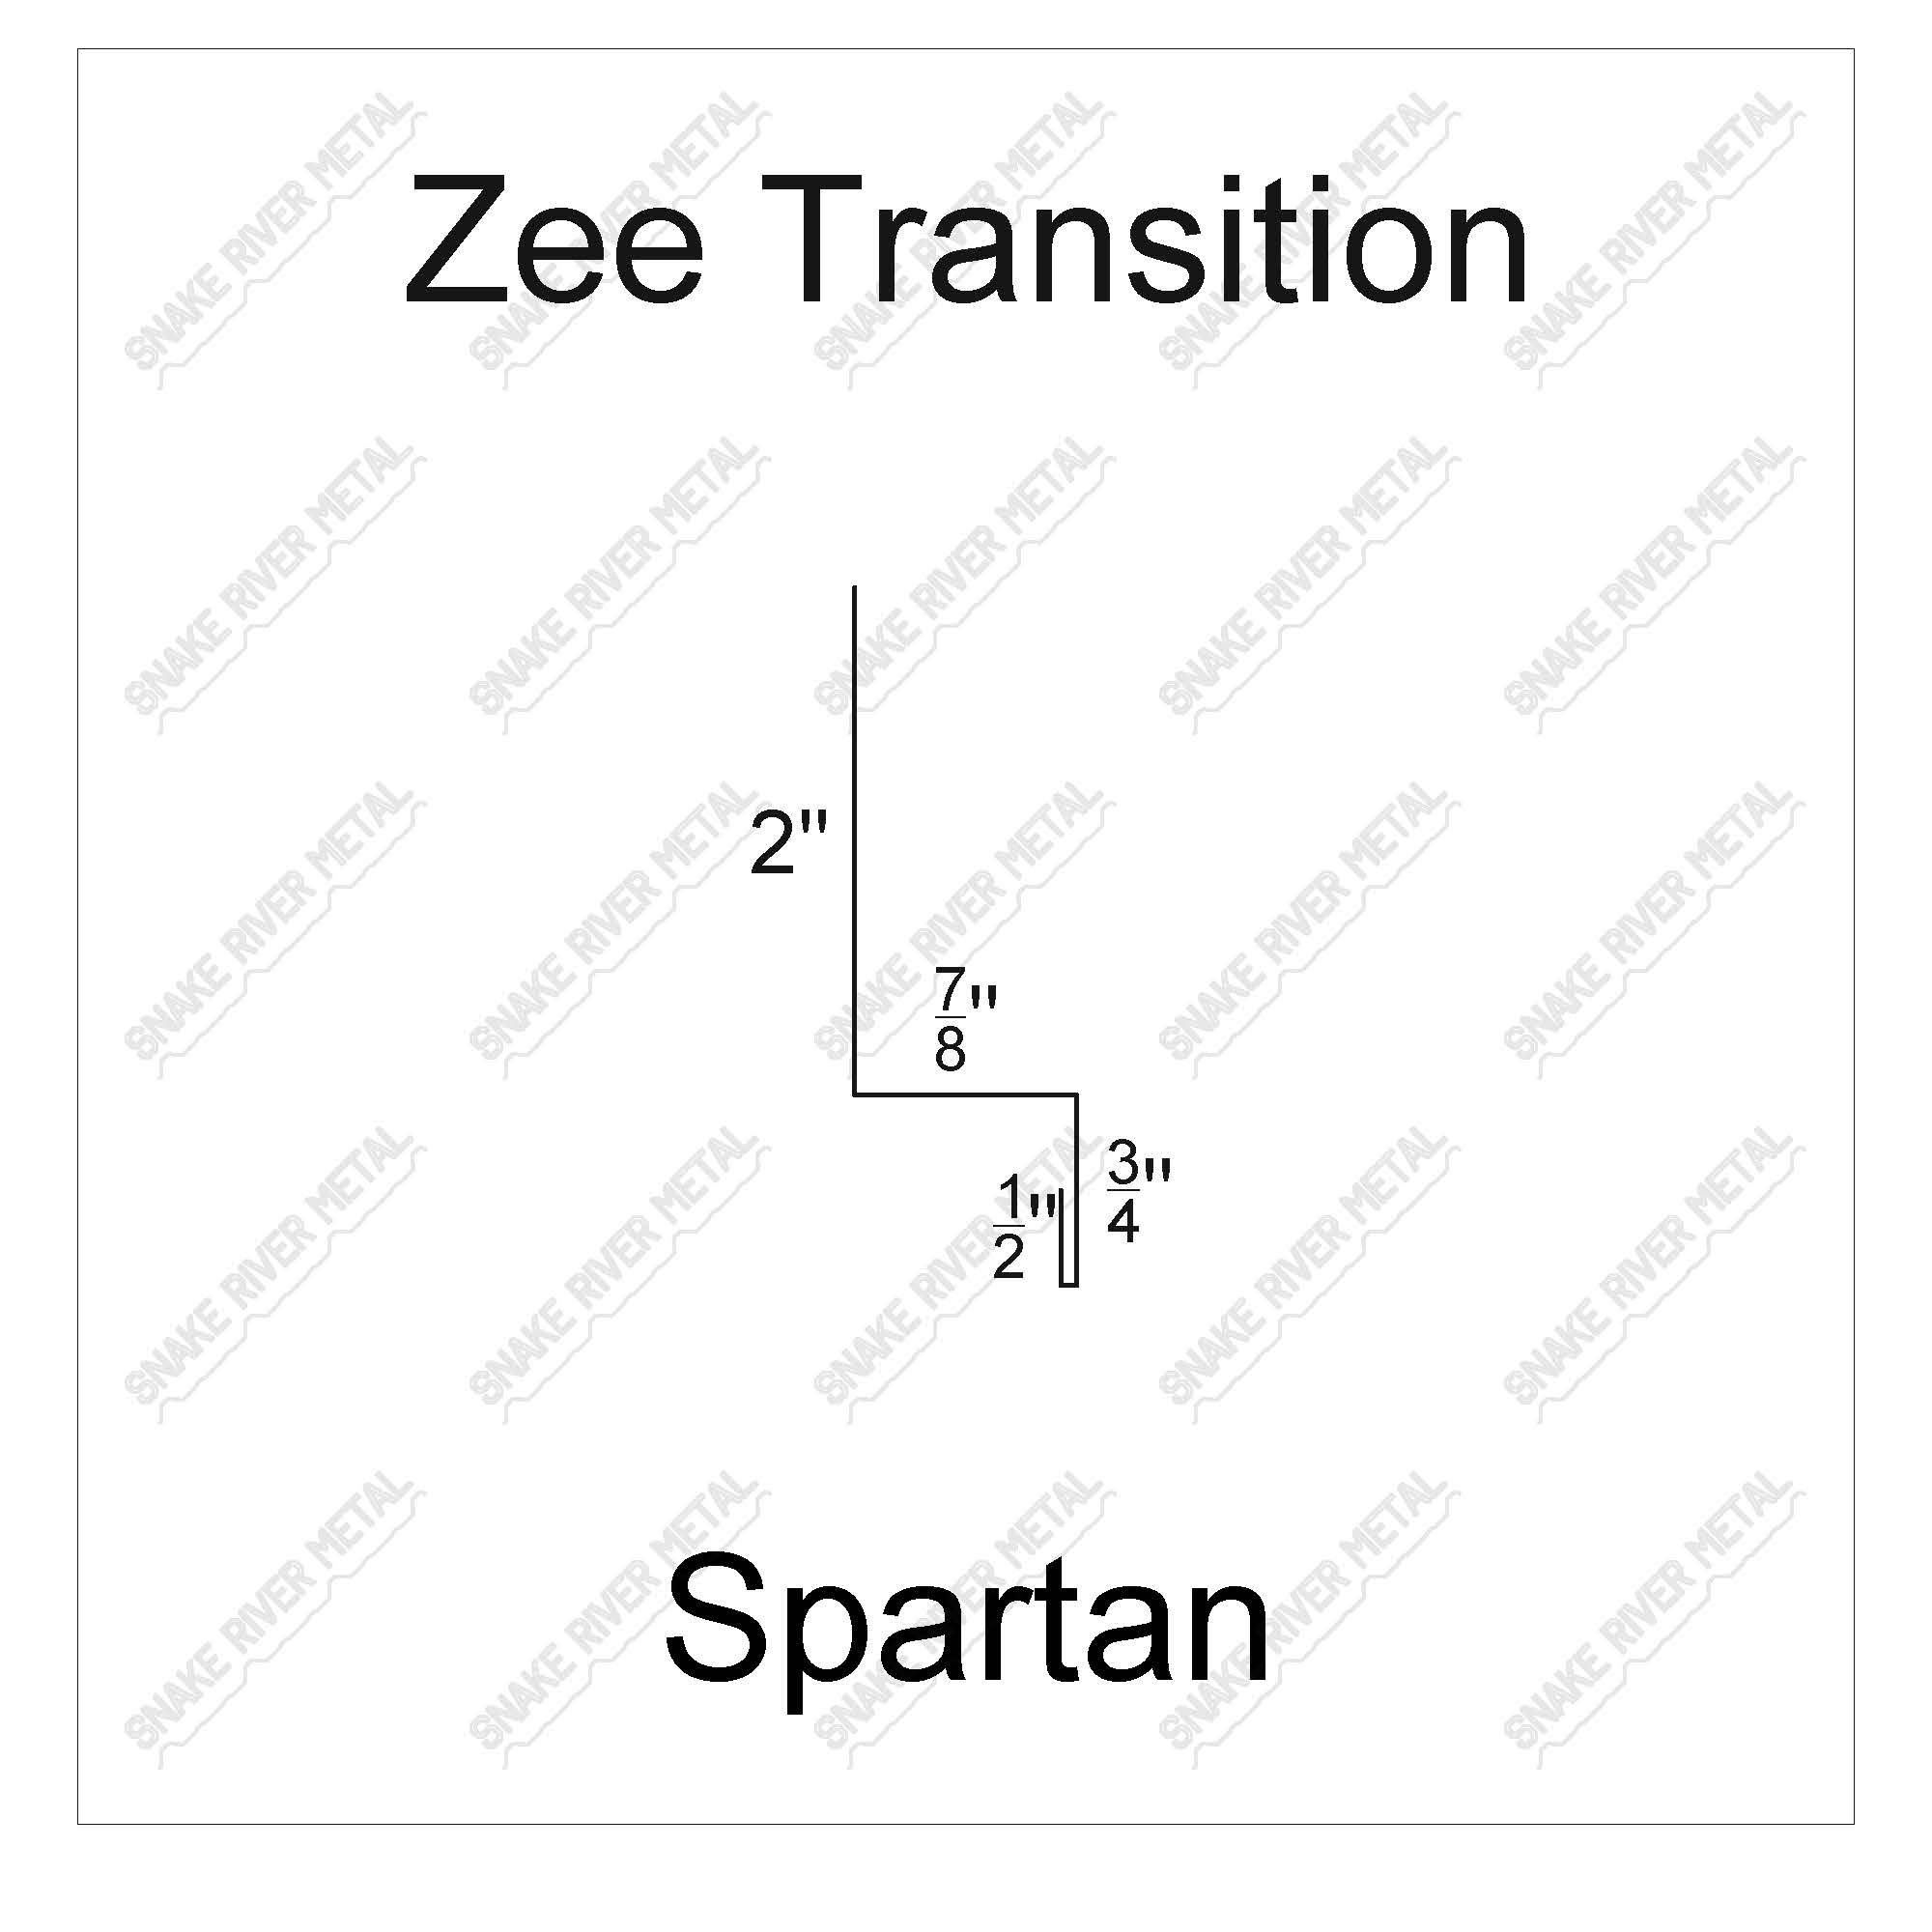 Zee Transition - SpartanTrim